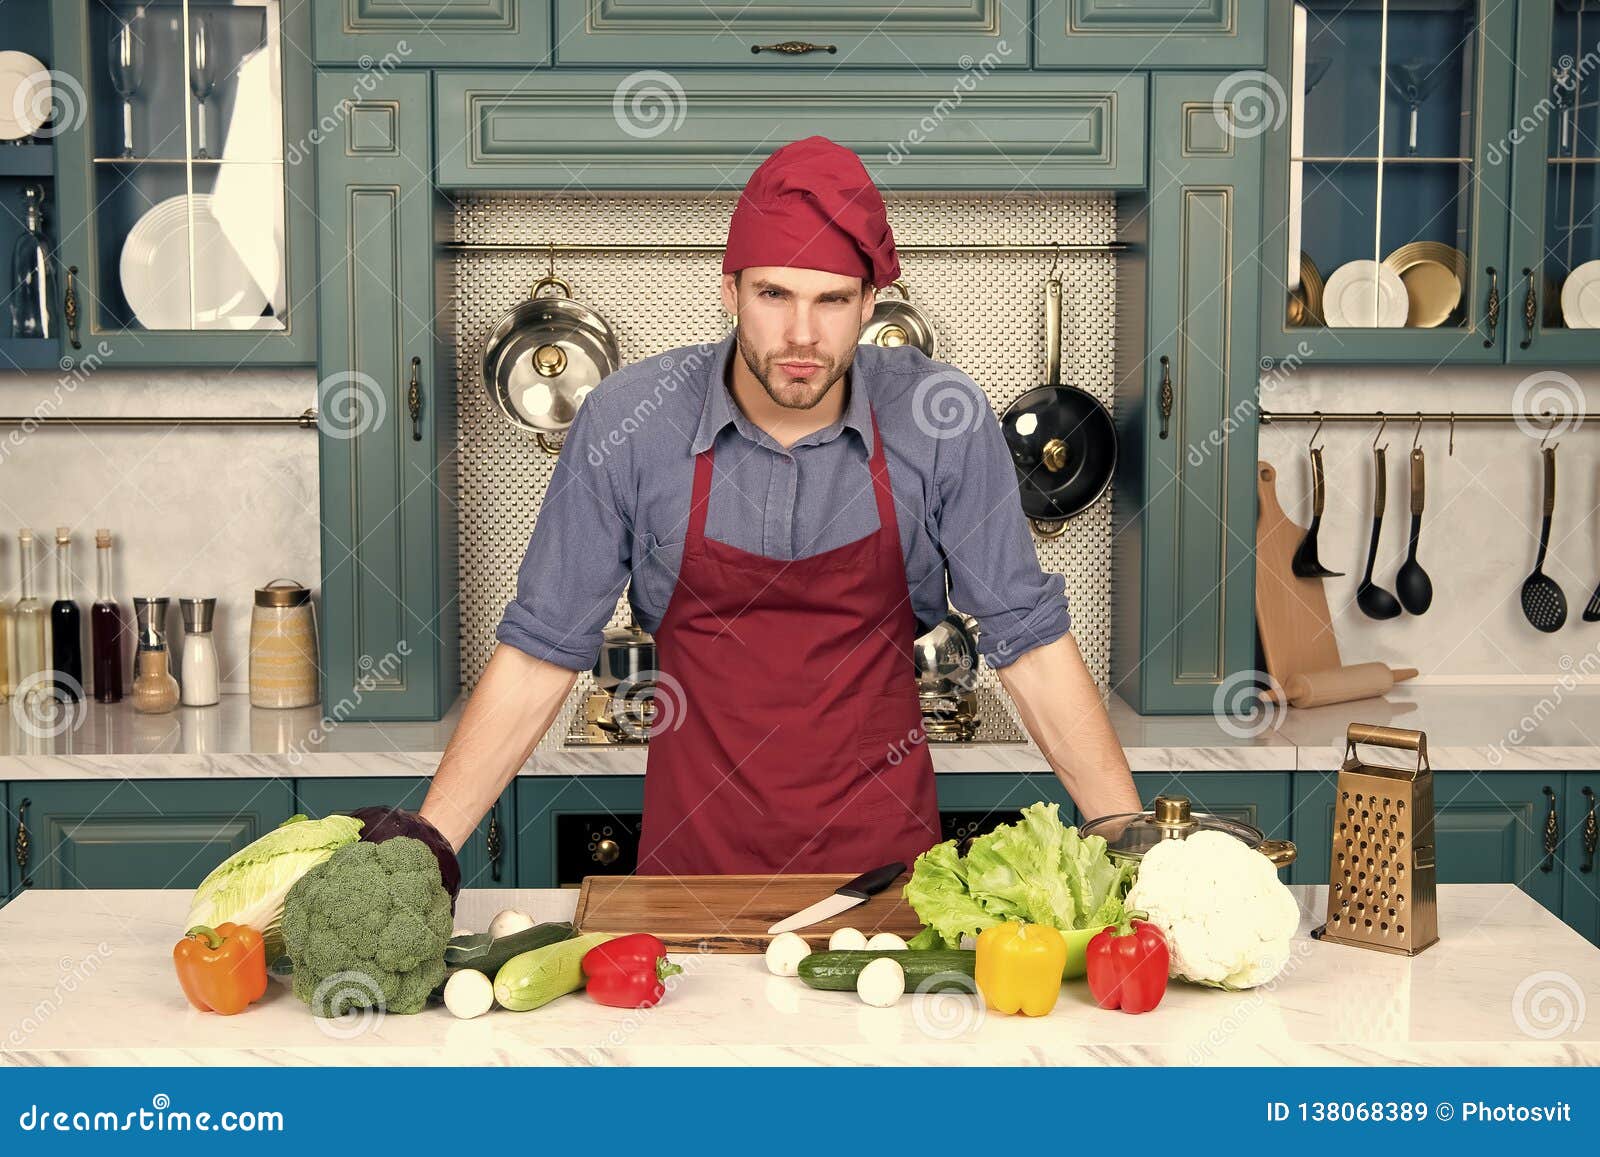 Hombre con delantal y sombrero de chef cocinando comida en la